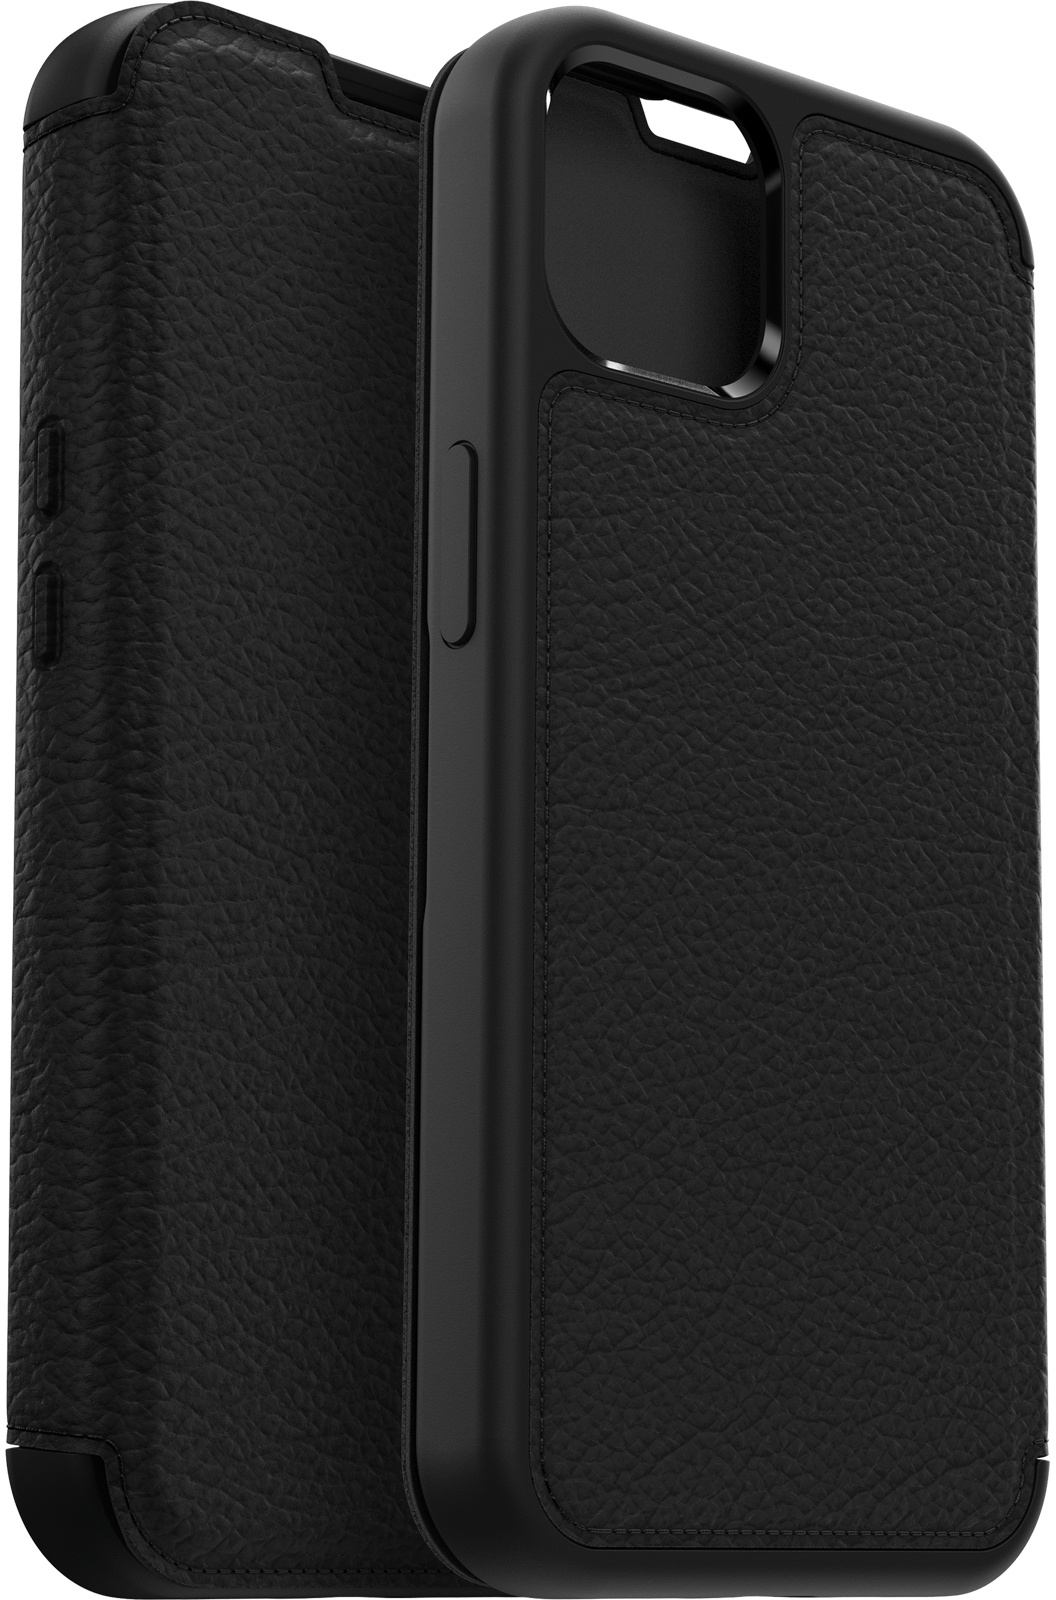 OtterBox Strada für iPhone 13, Ultraflache Schutzhülle, Hochwertiges Leder-Design, Heftformat, Bargeld- und Kartenfach